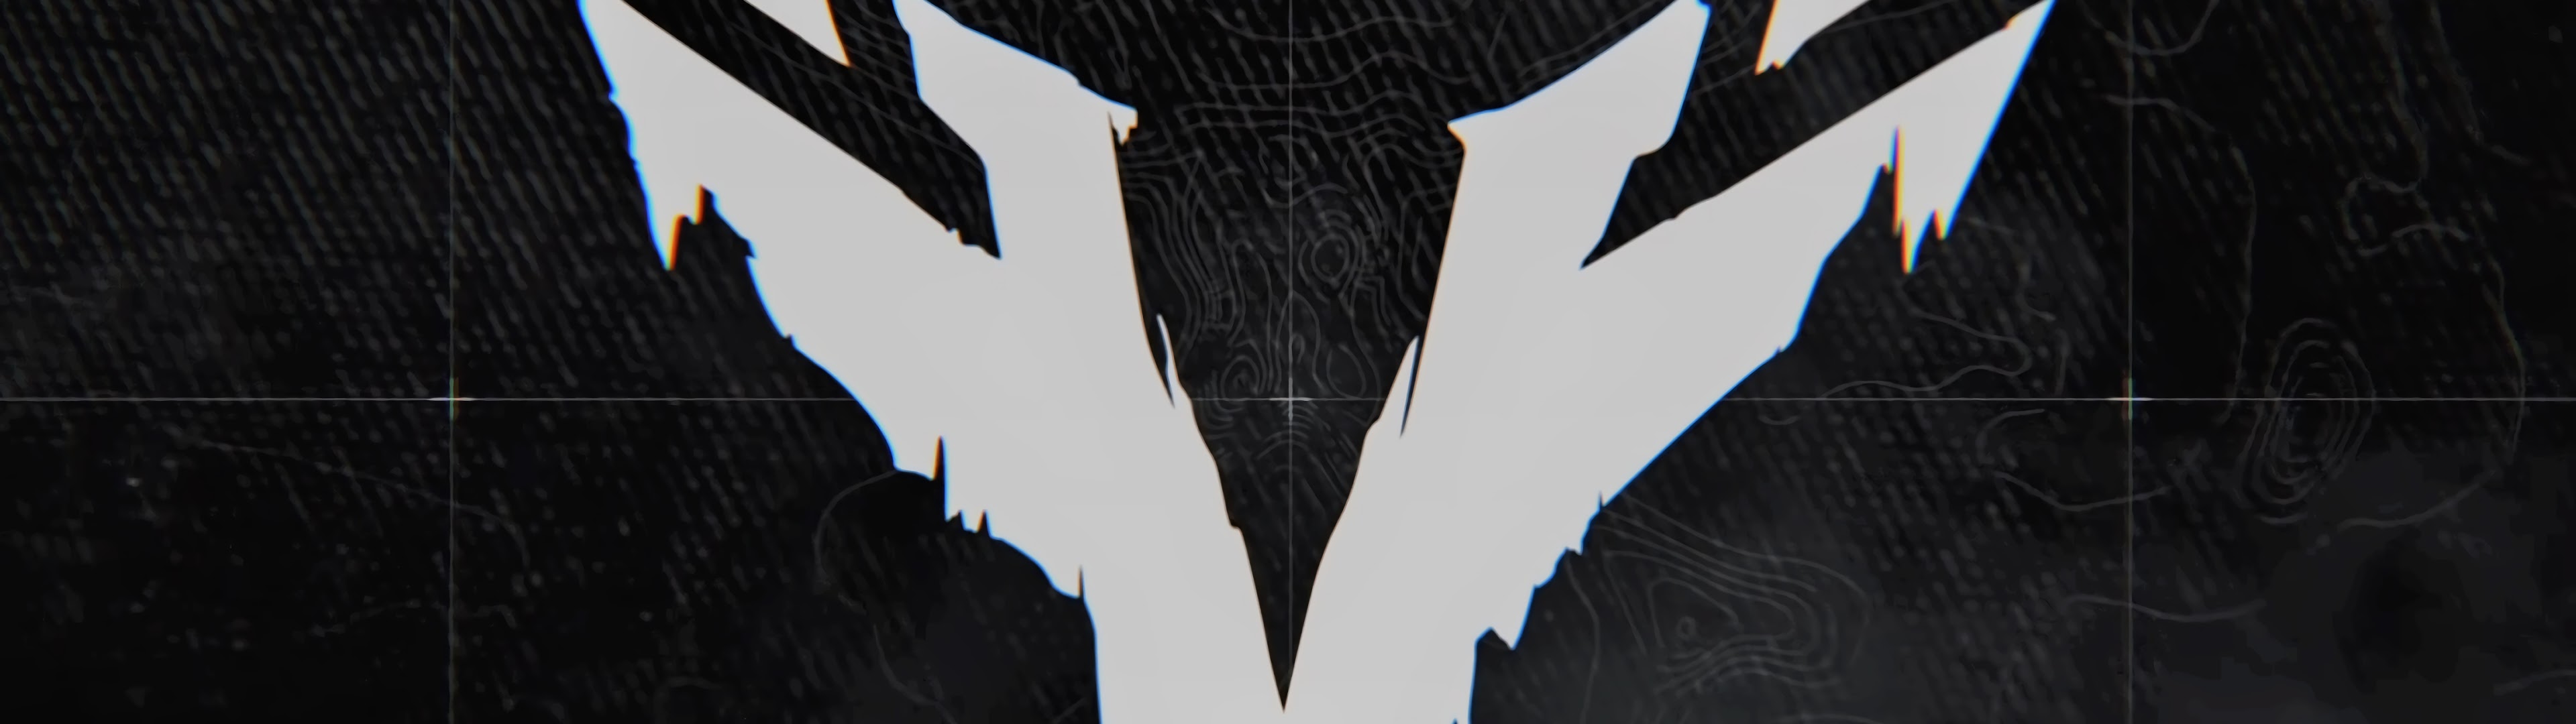 Ghost Recon Breakpoint, The Wolves, Logo, 4K, #5 Wallpaper PC Desktop